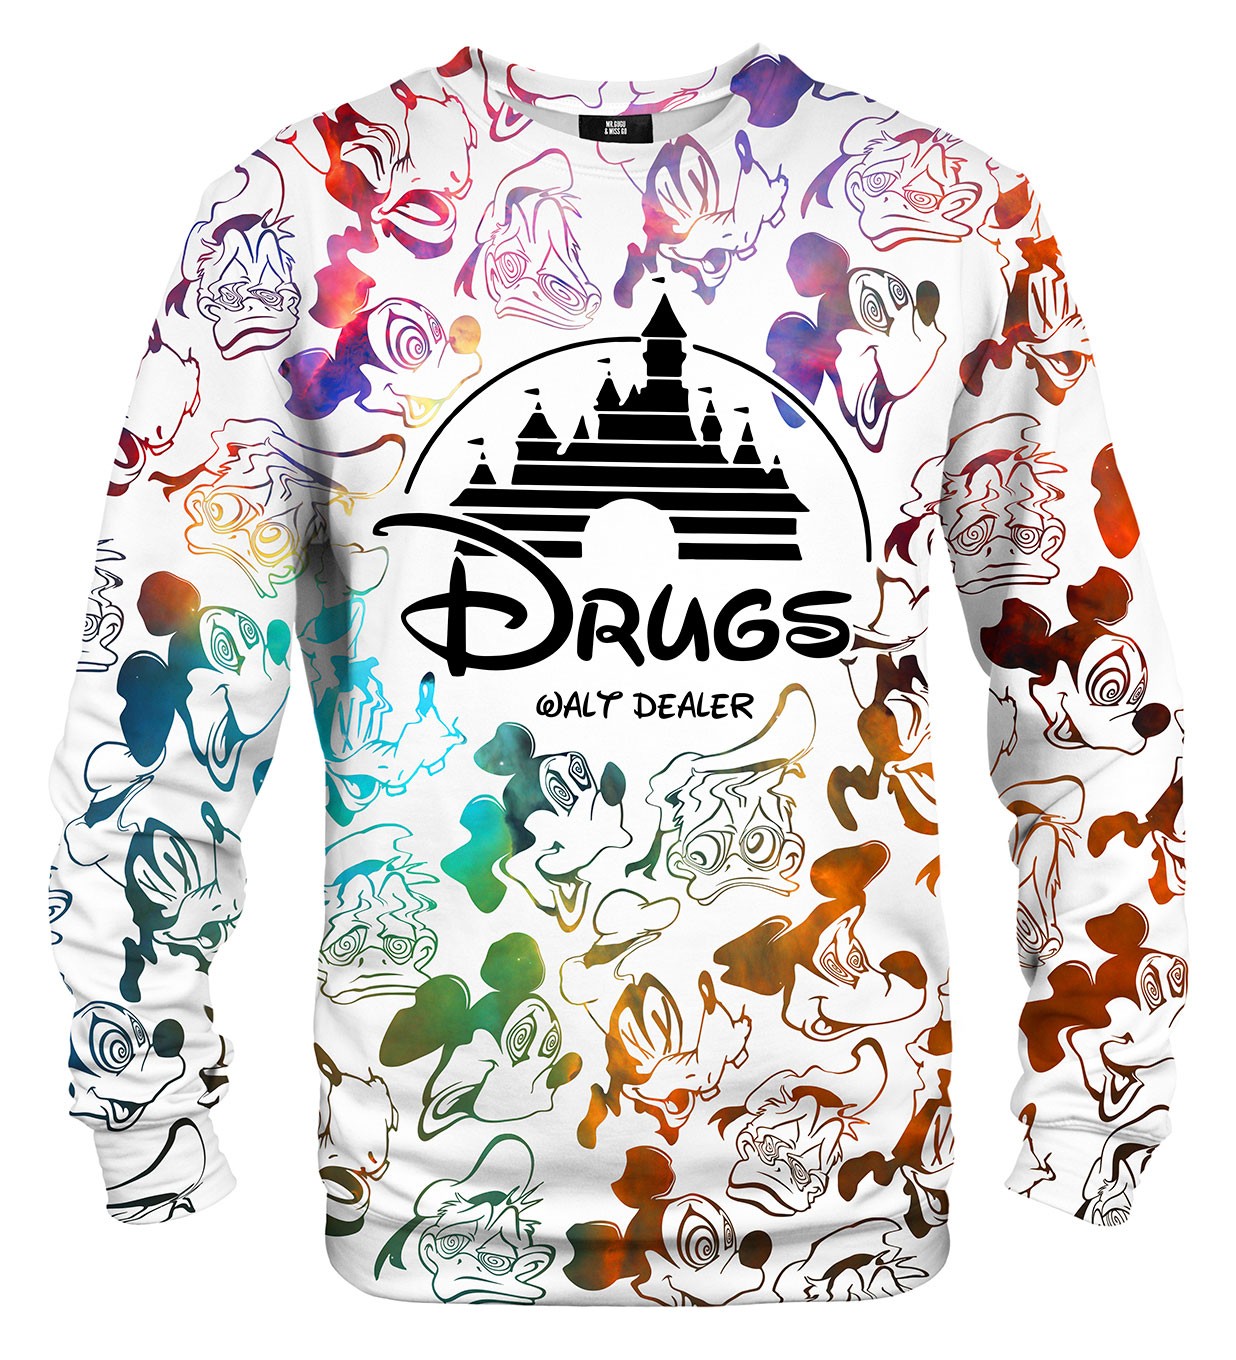 Mr одежда. Толстовка drugs Disney. Drugs Walt Dealer. Уолт дилер толстовка. Худи drugs stop.